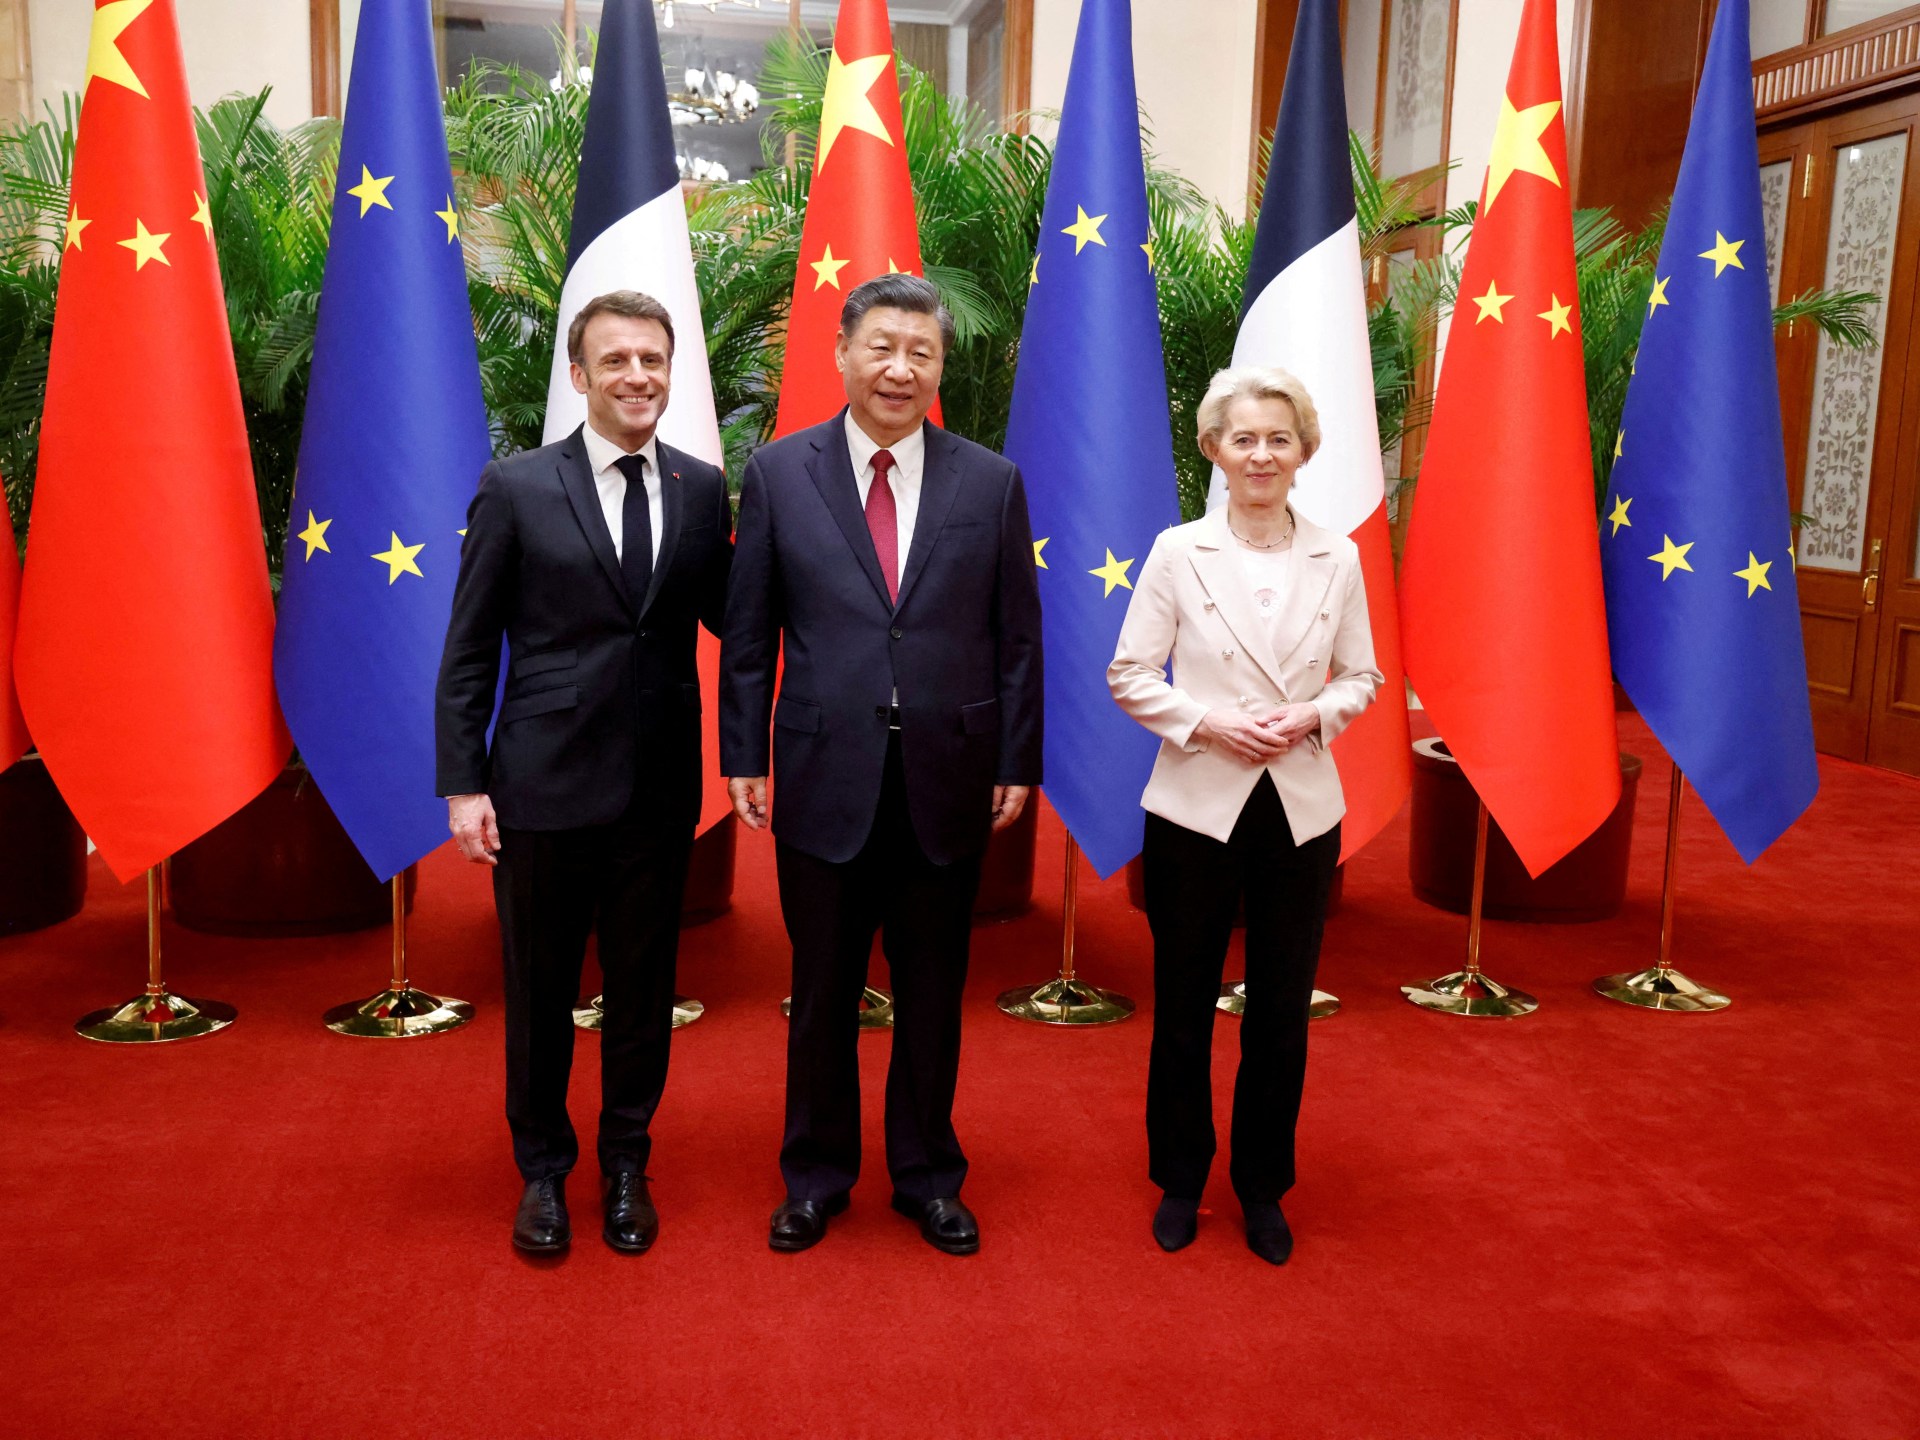 Cina dalam fokus saat para pemimpin UE bersiap untuk KTT penting |  Uni Eropa